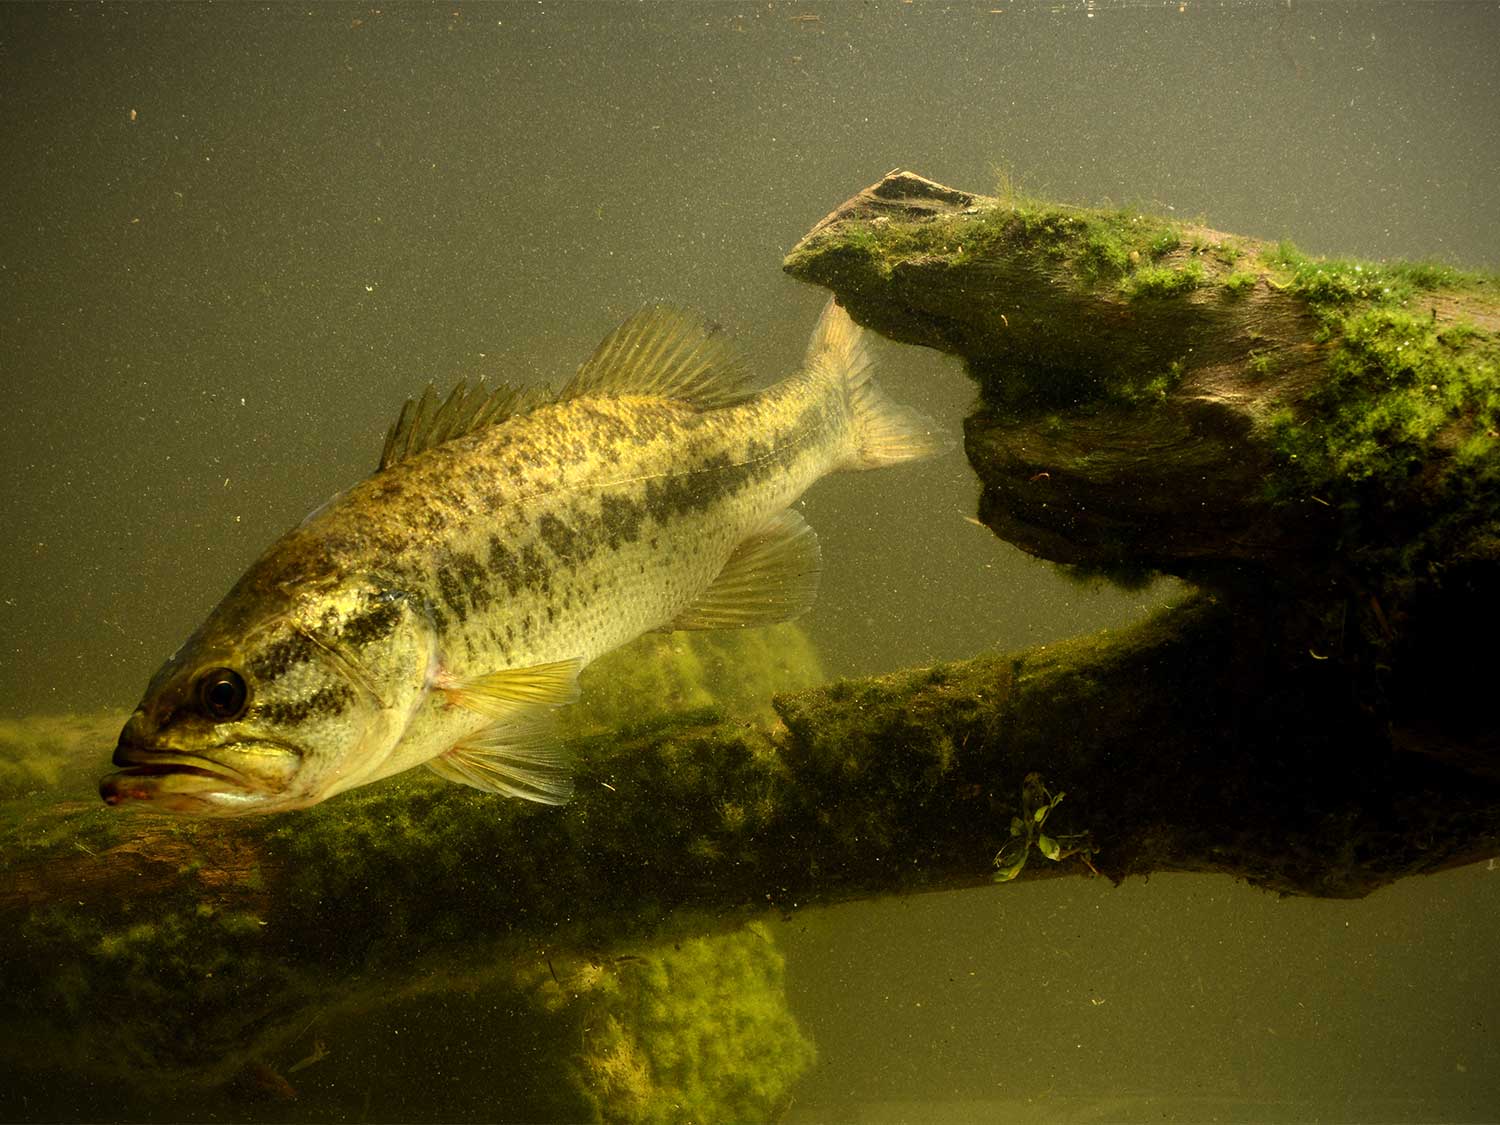 a big bass swimming through murky water